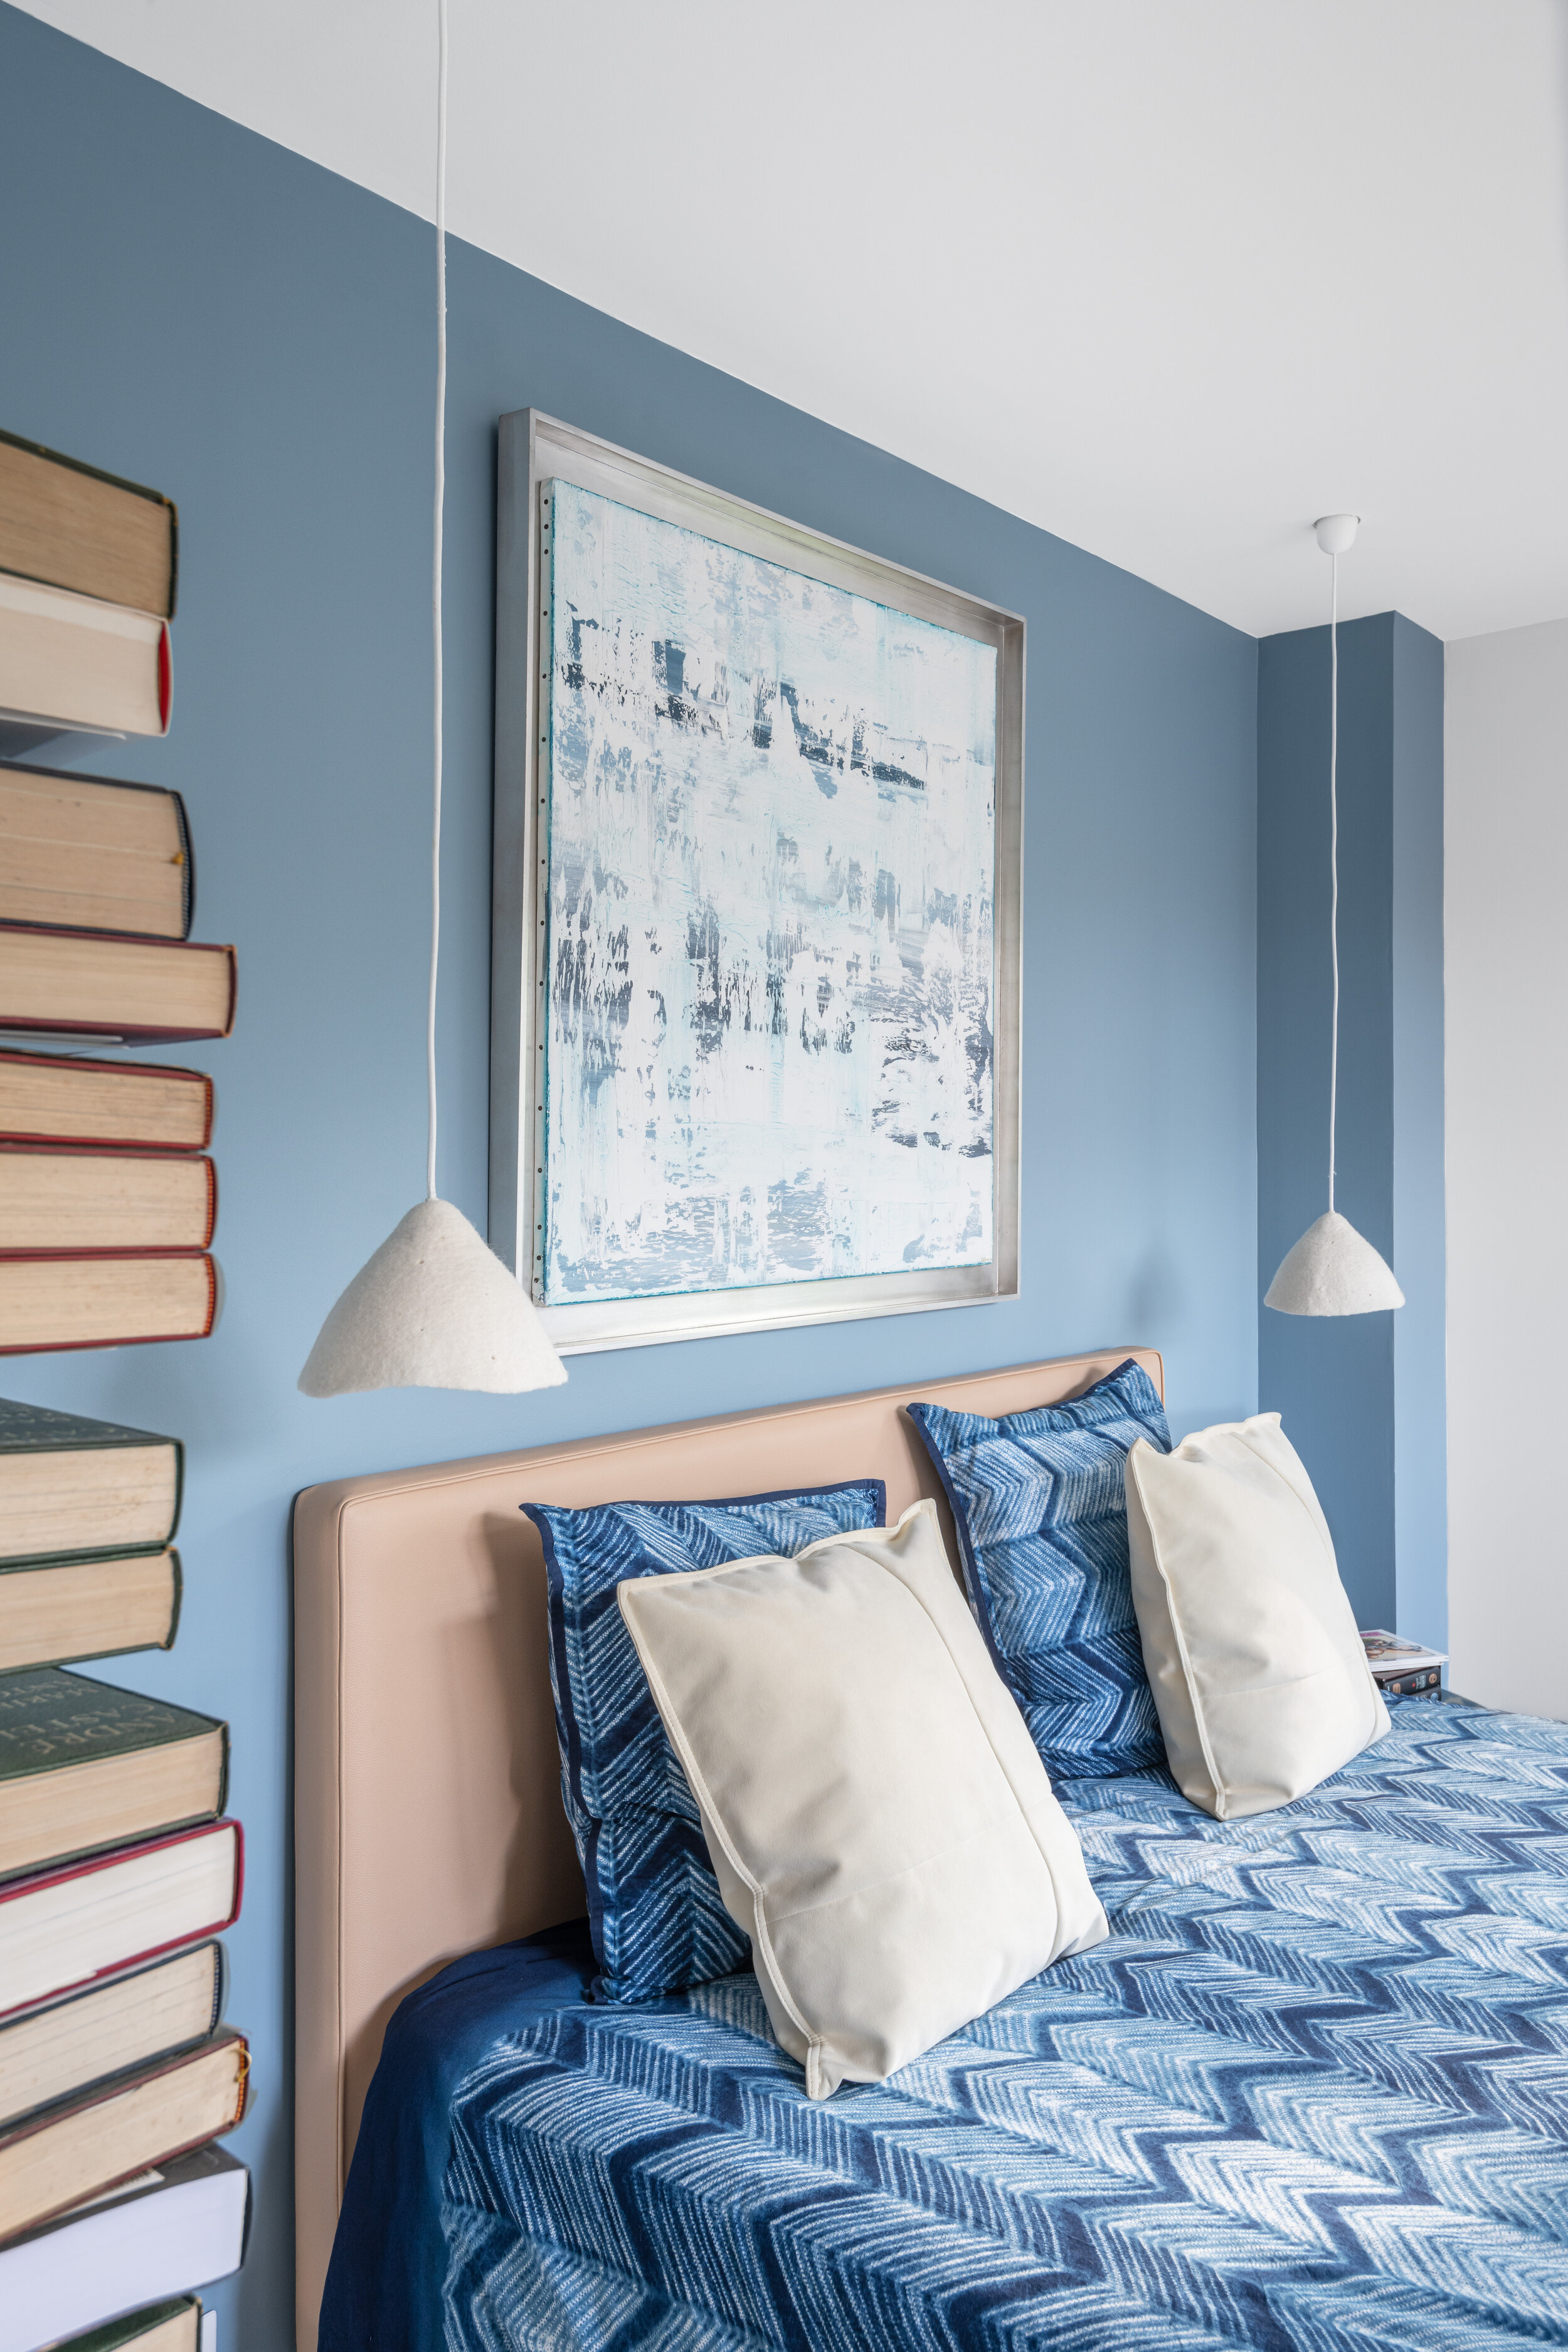 Architecte-interieur-contemporaine-decoration-design-sud-nice-saint-raphael-cannes-maison-chambre-bleue.jpg